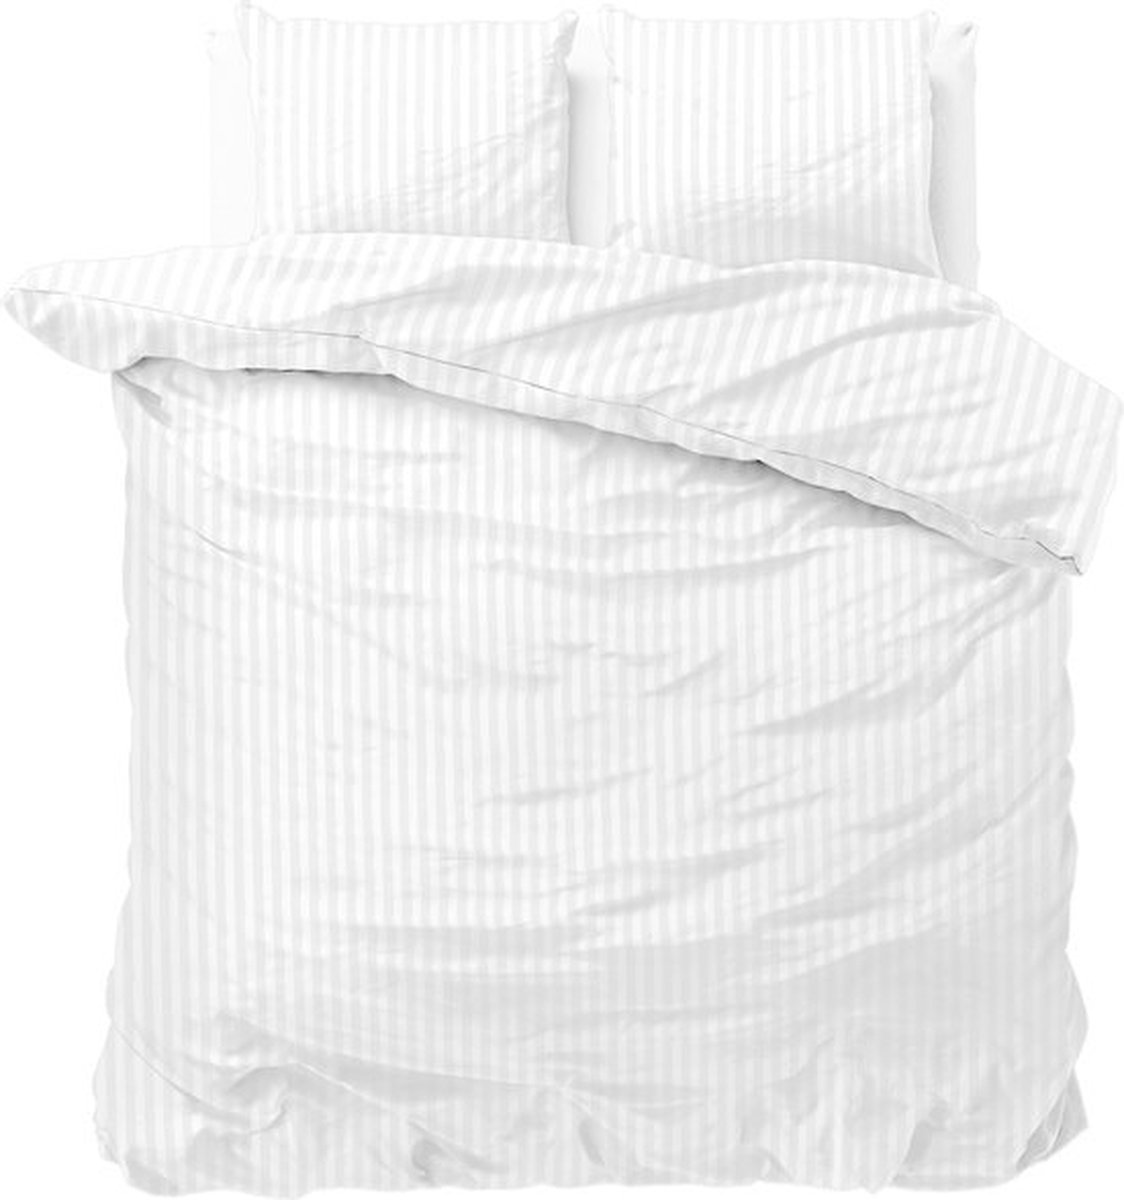 2-persoons dekbedovertrek (dekbed hoes) wit / off-white gestreept met fijne smalle strepen / banen tweepersoons 200 x 220 cm (slaapkamer beddengoed)